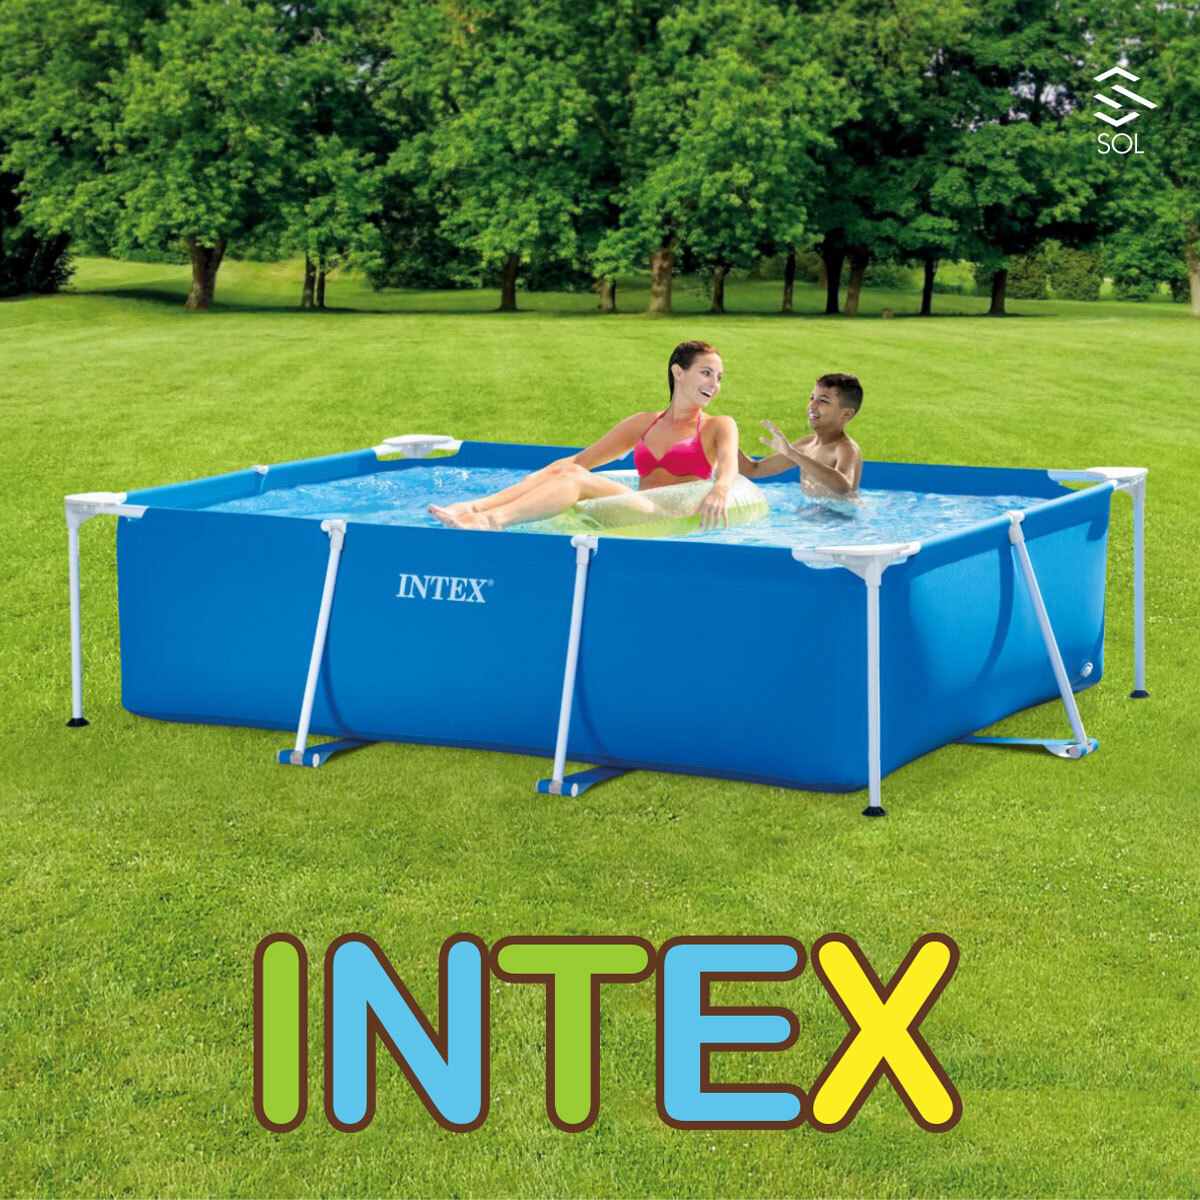 INTEX бассейн большой стандартный товар Inte k потертость k tang la рама бассейн домашний бассейн усиленный винил 3 слой структура 220cmX150cmX60cm 28270